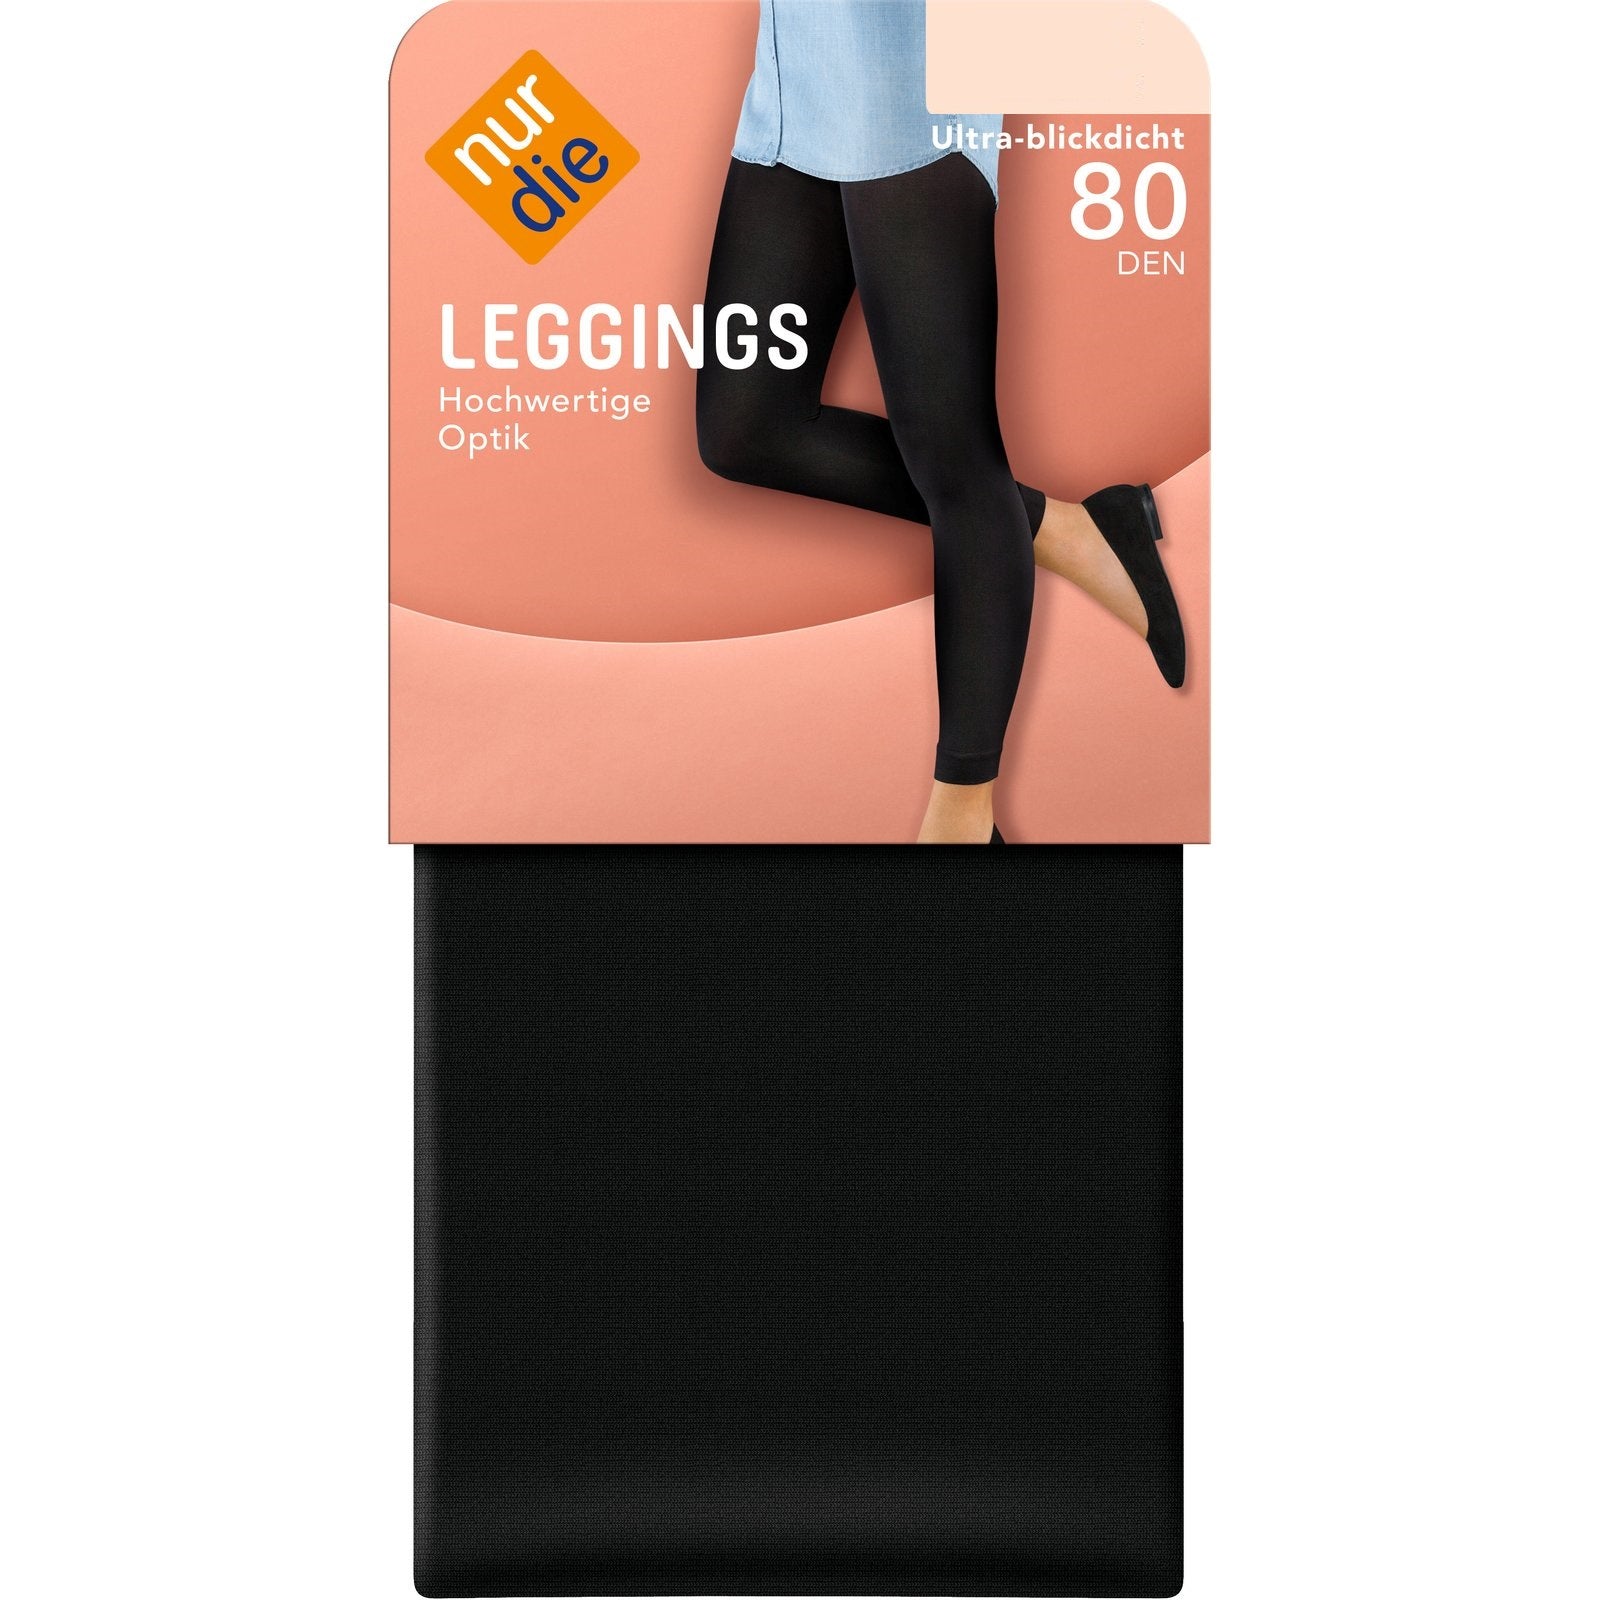 NurDie Leggings 80 Den Large (Case of 5)